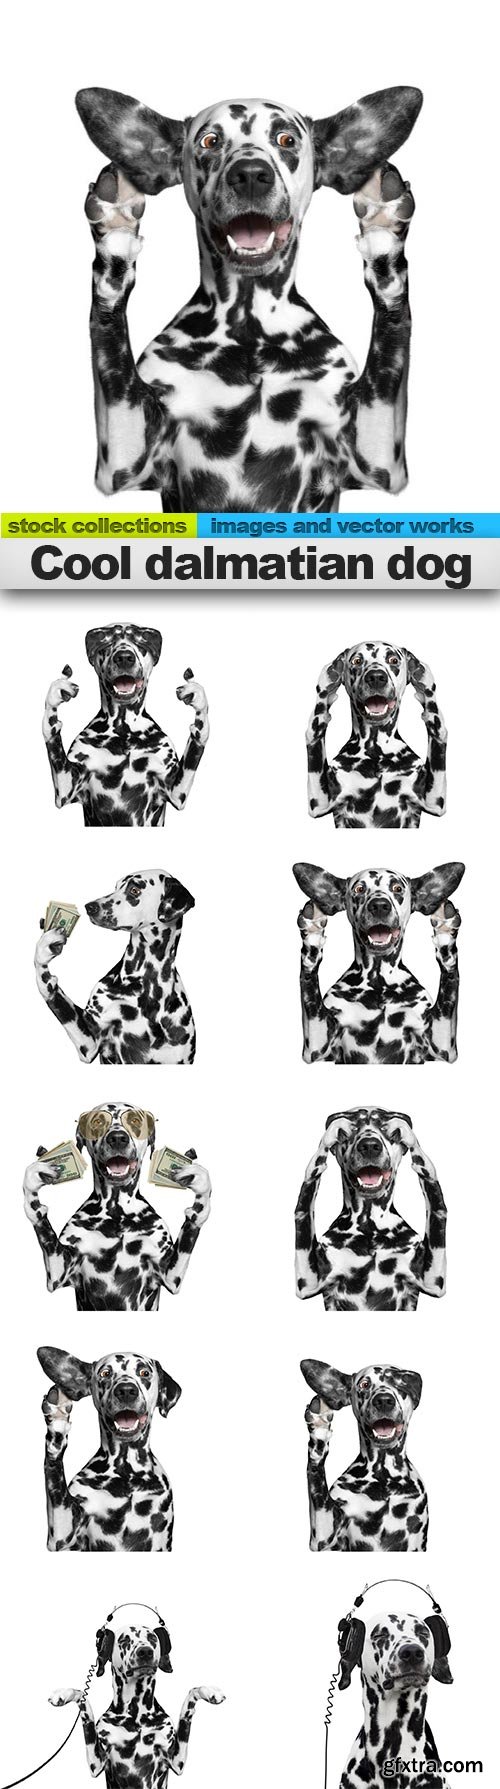 Cool dalmatian dog, 15 x UHQ JPEG